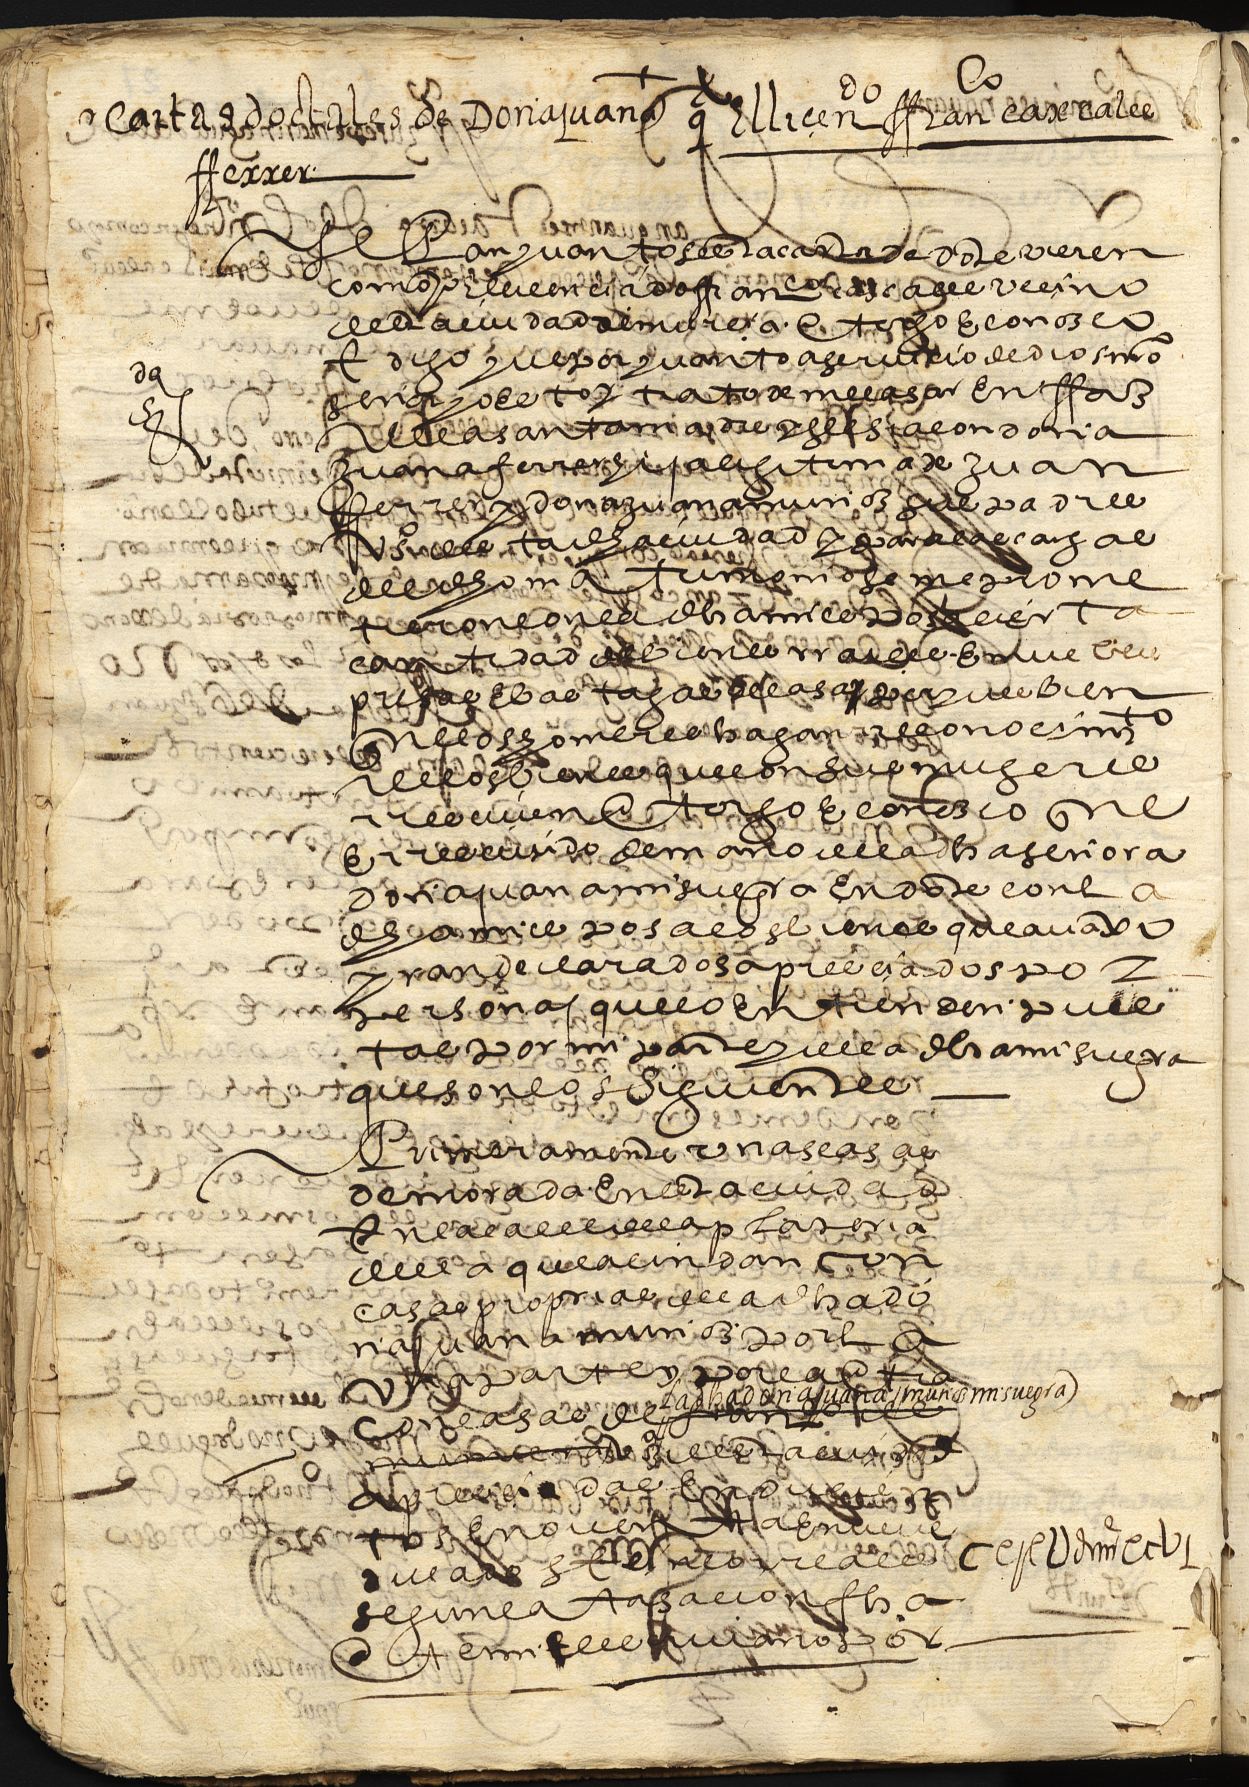 Registro de Juan de la Fuente, Murcia de 1608 y 1609.